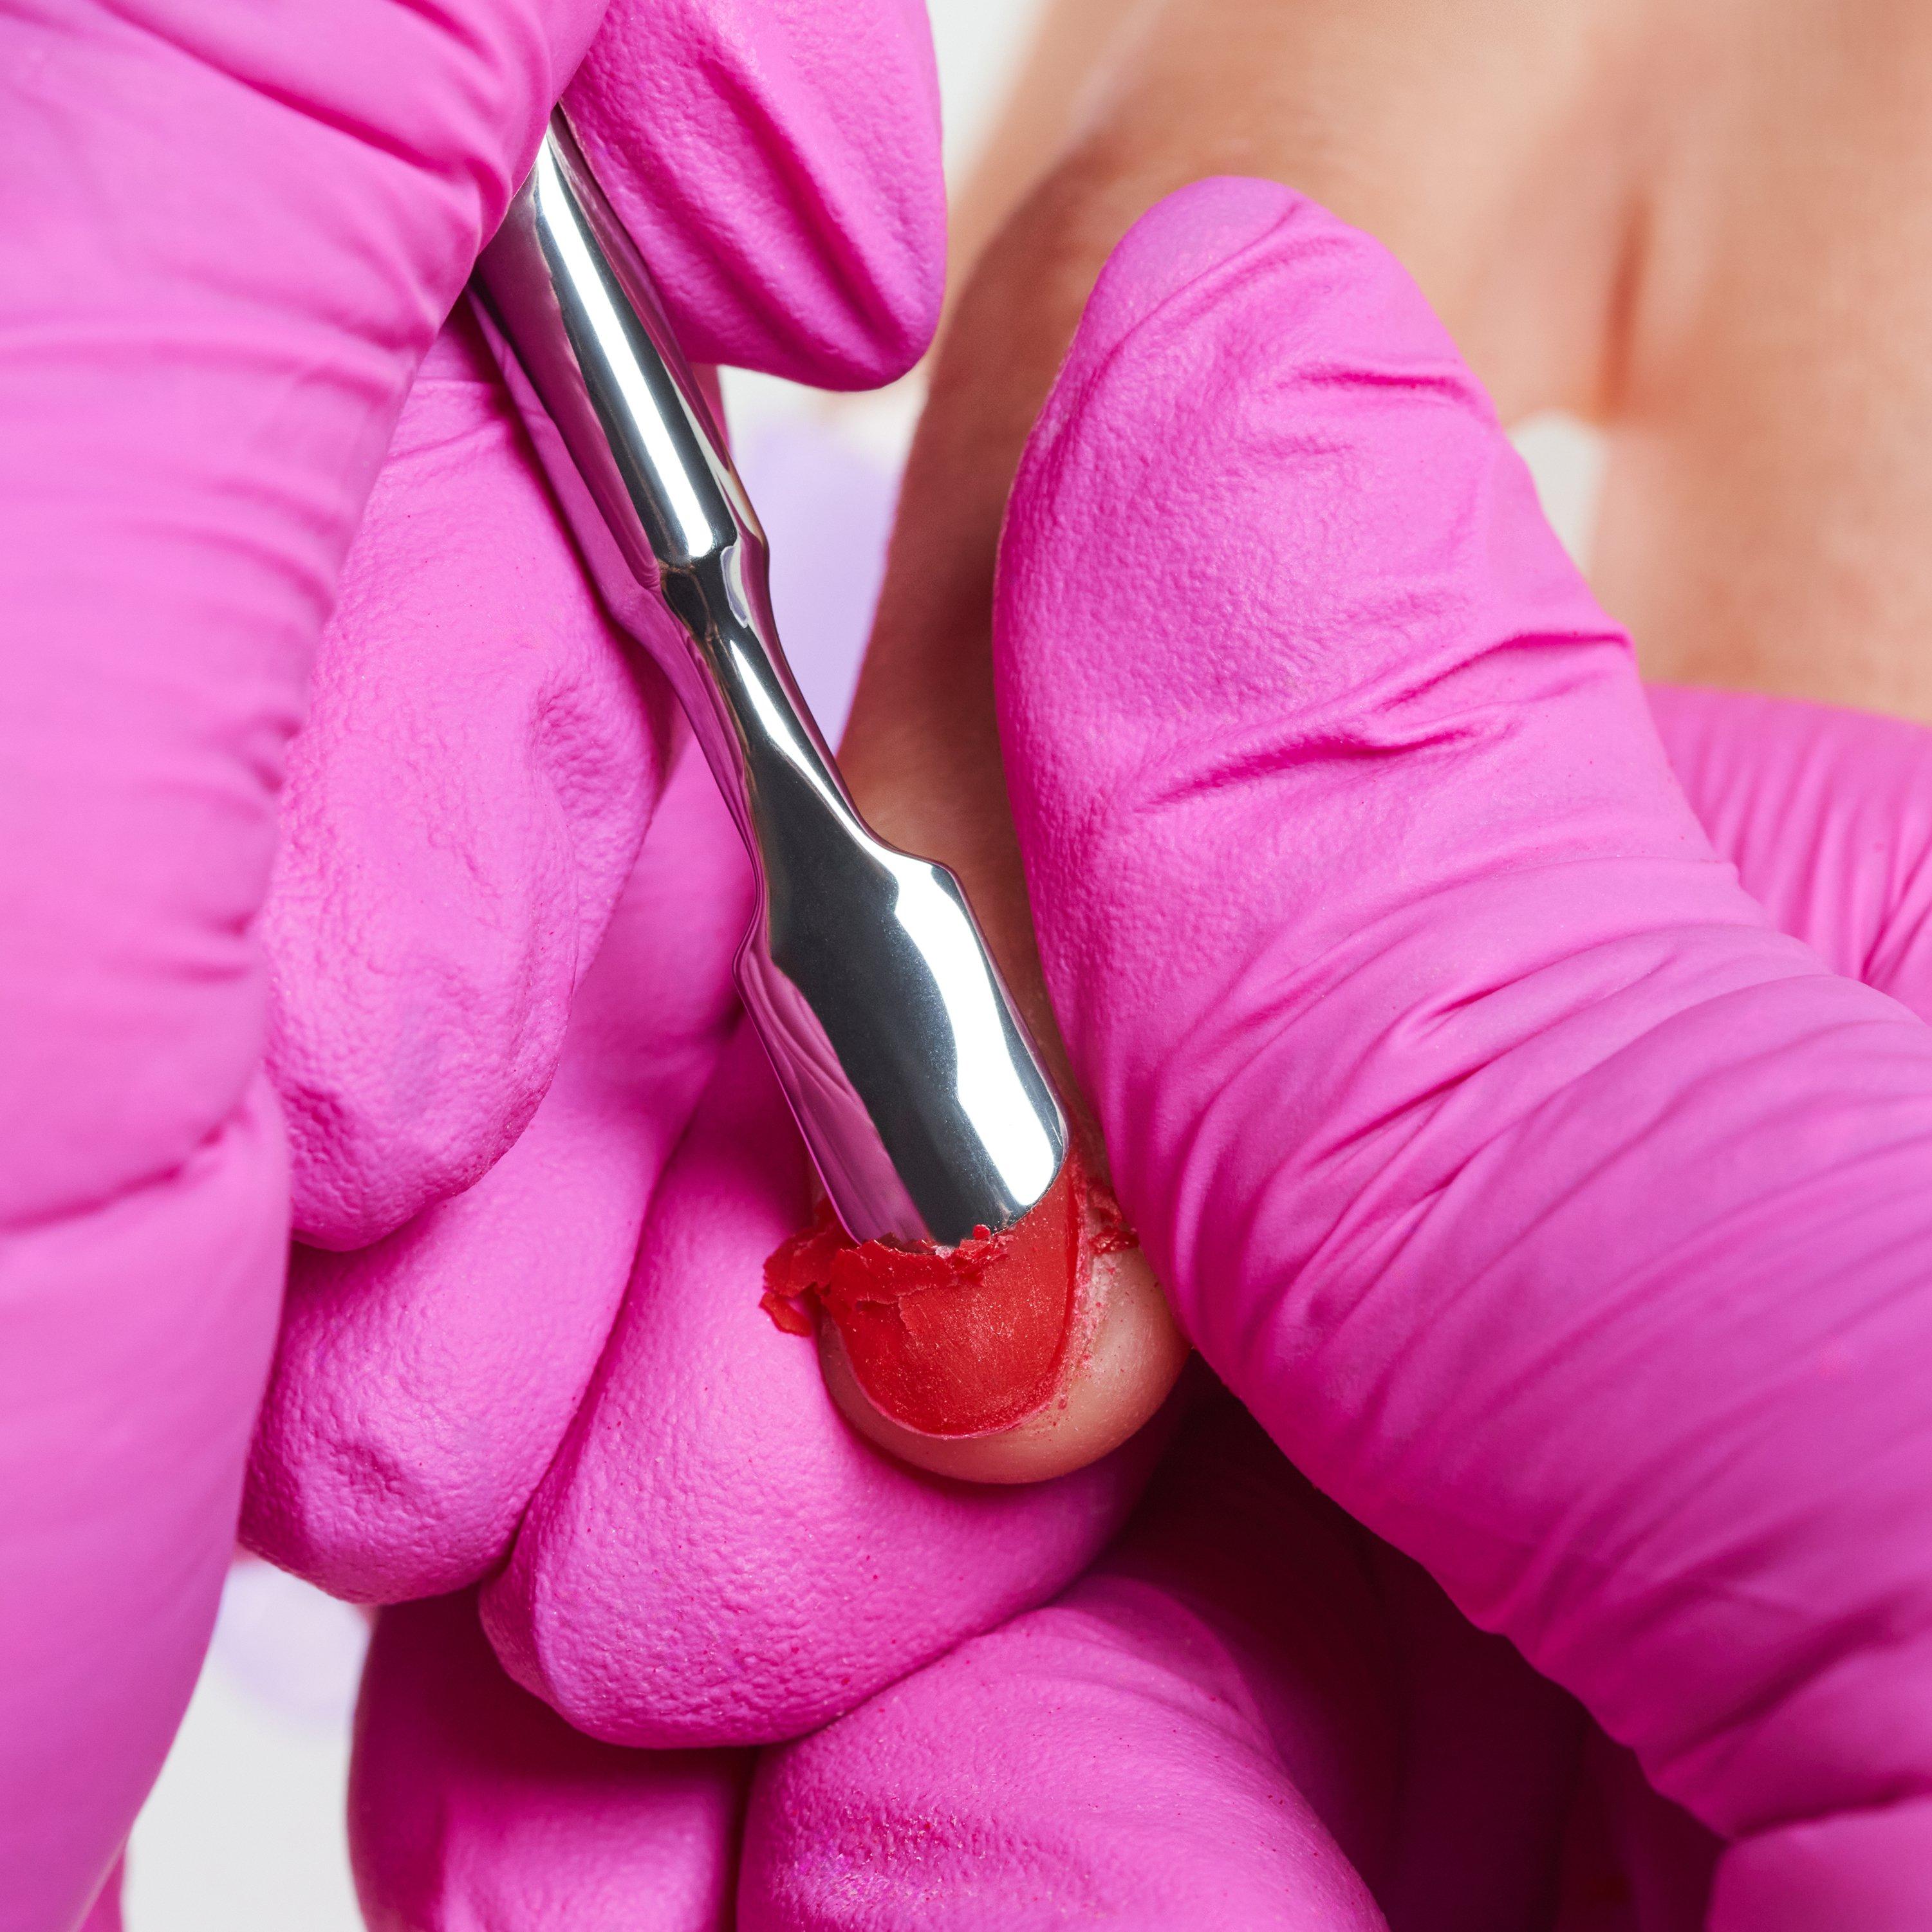 essence UV nail polish removal